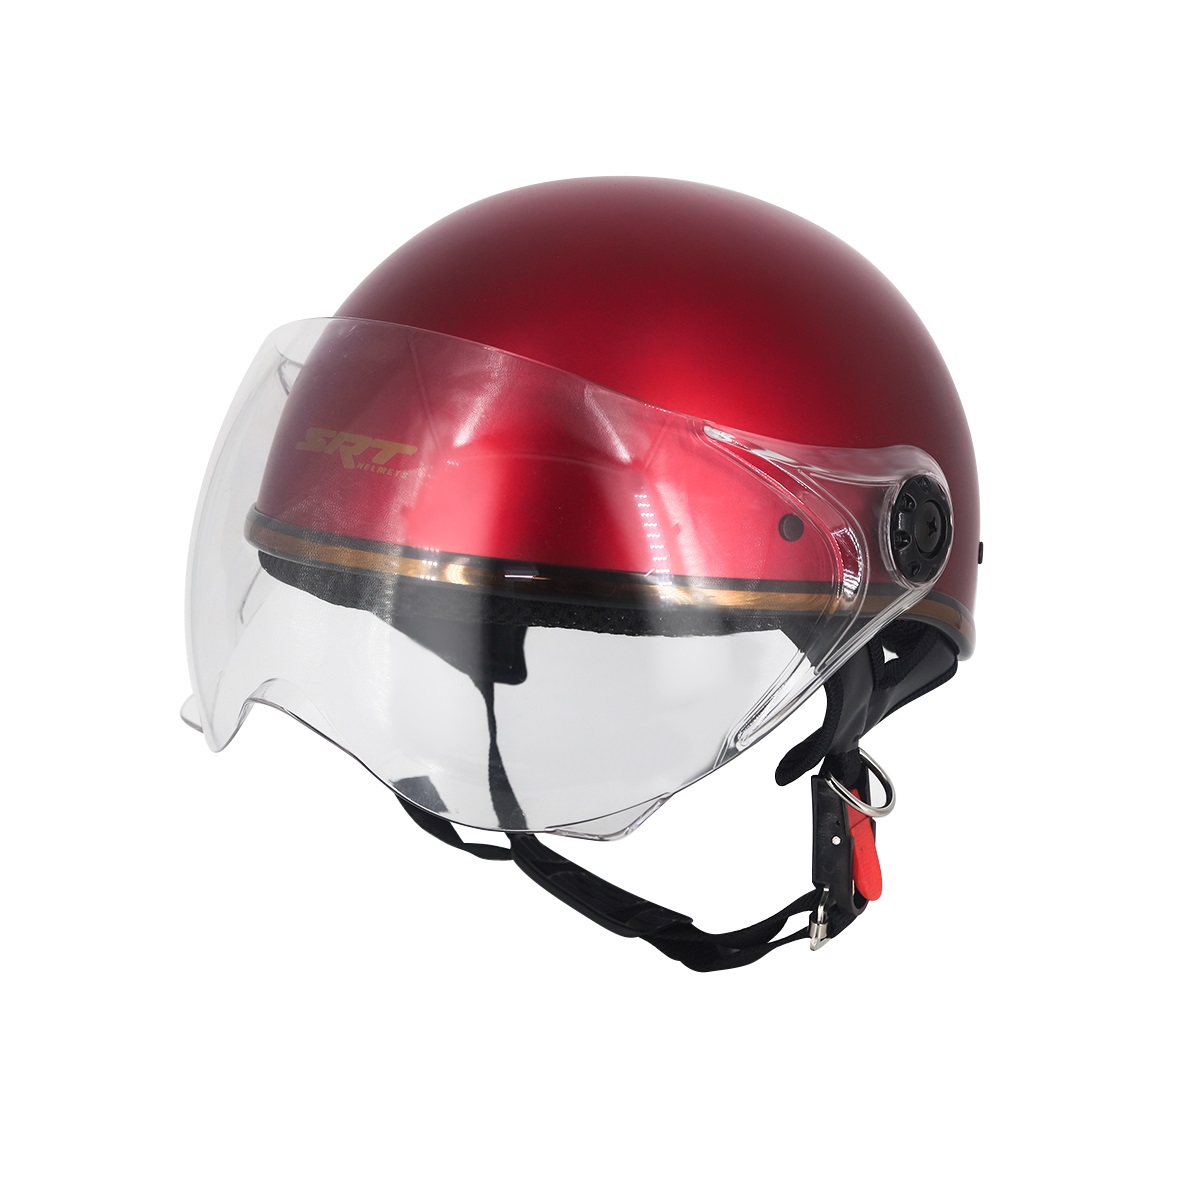 Mũ bảo hiểm 1/2 SRT viền đồng cao cấp có kính chắn gió bảo vệ mắt thời trang + Kính càng - Đỏ đô